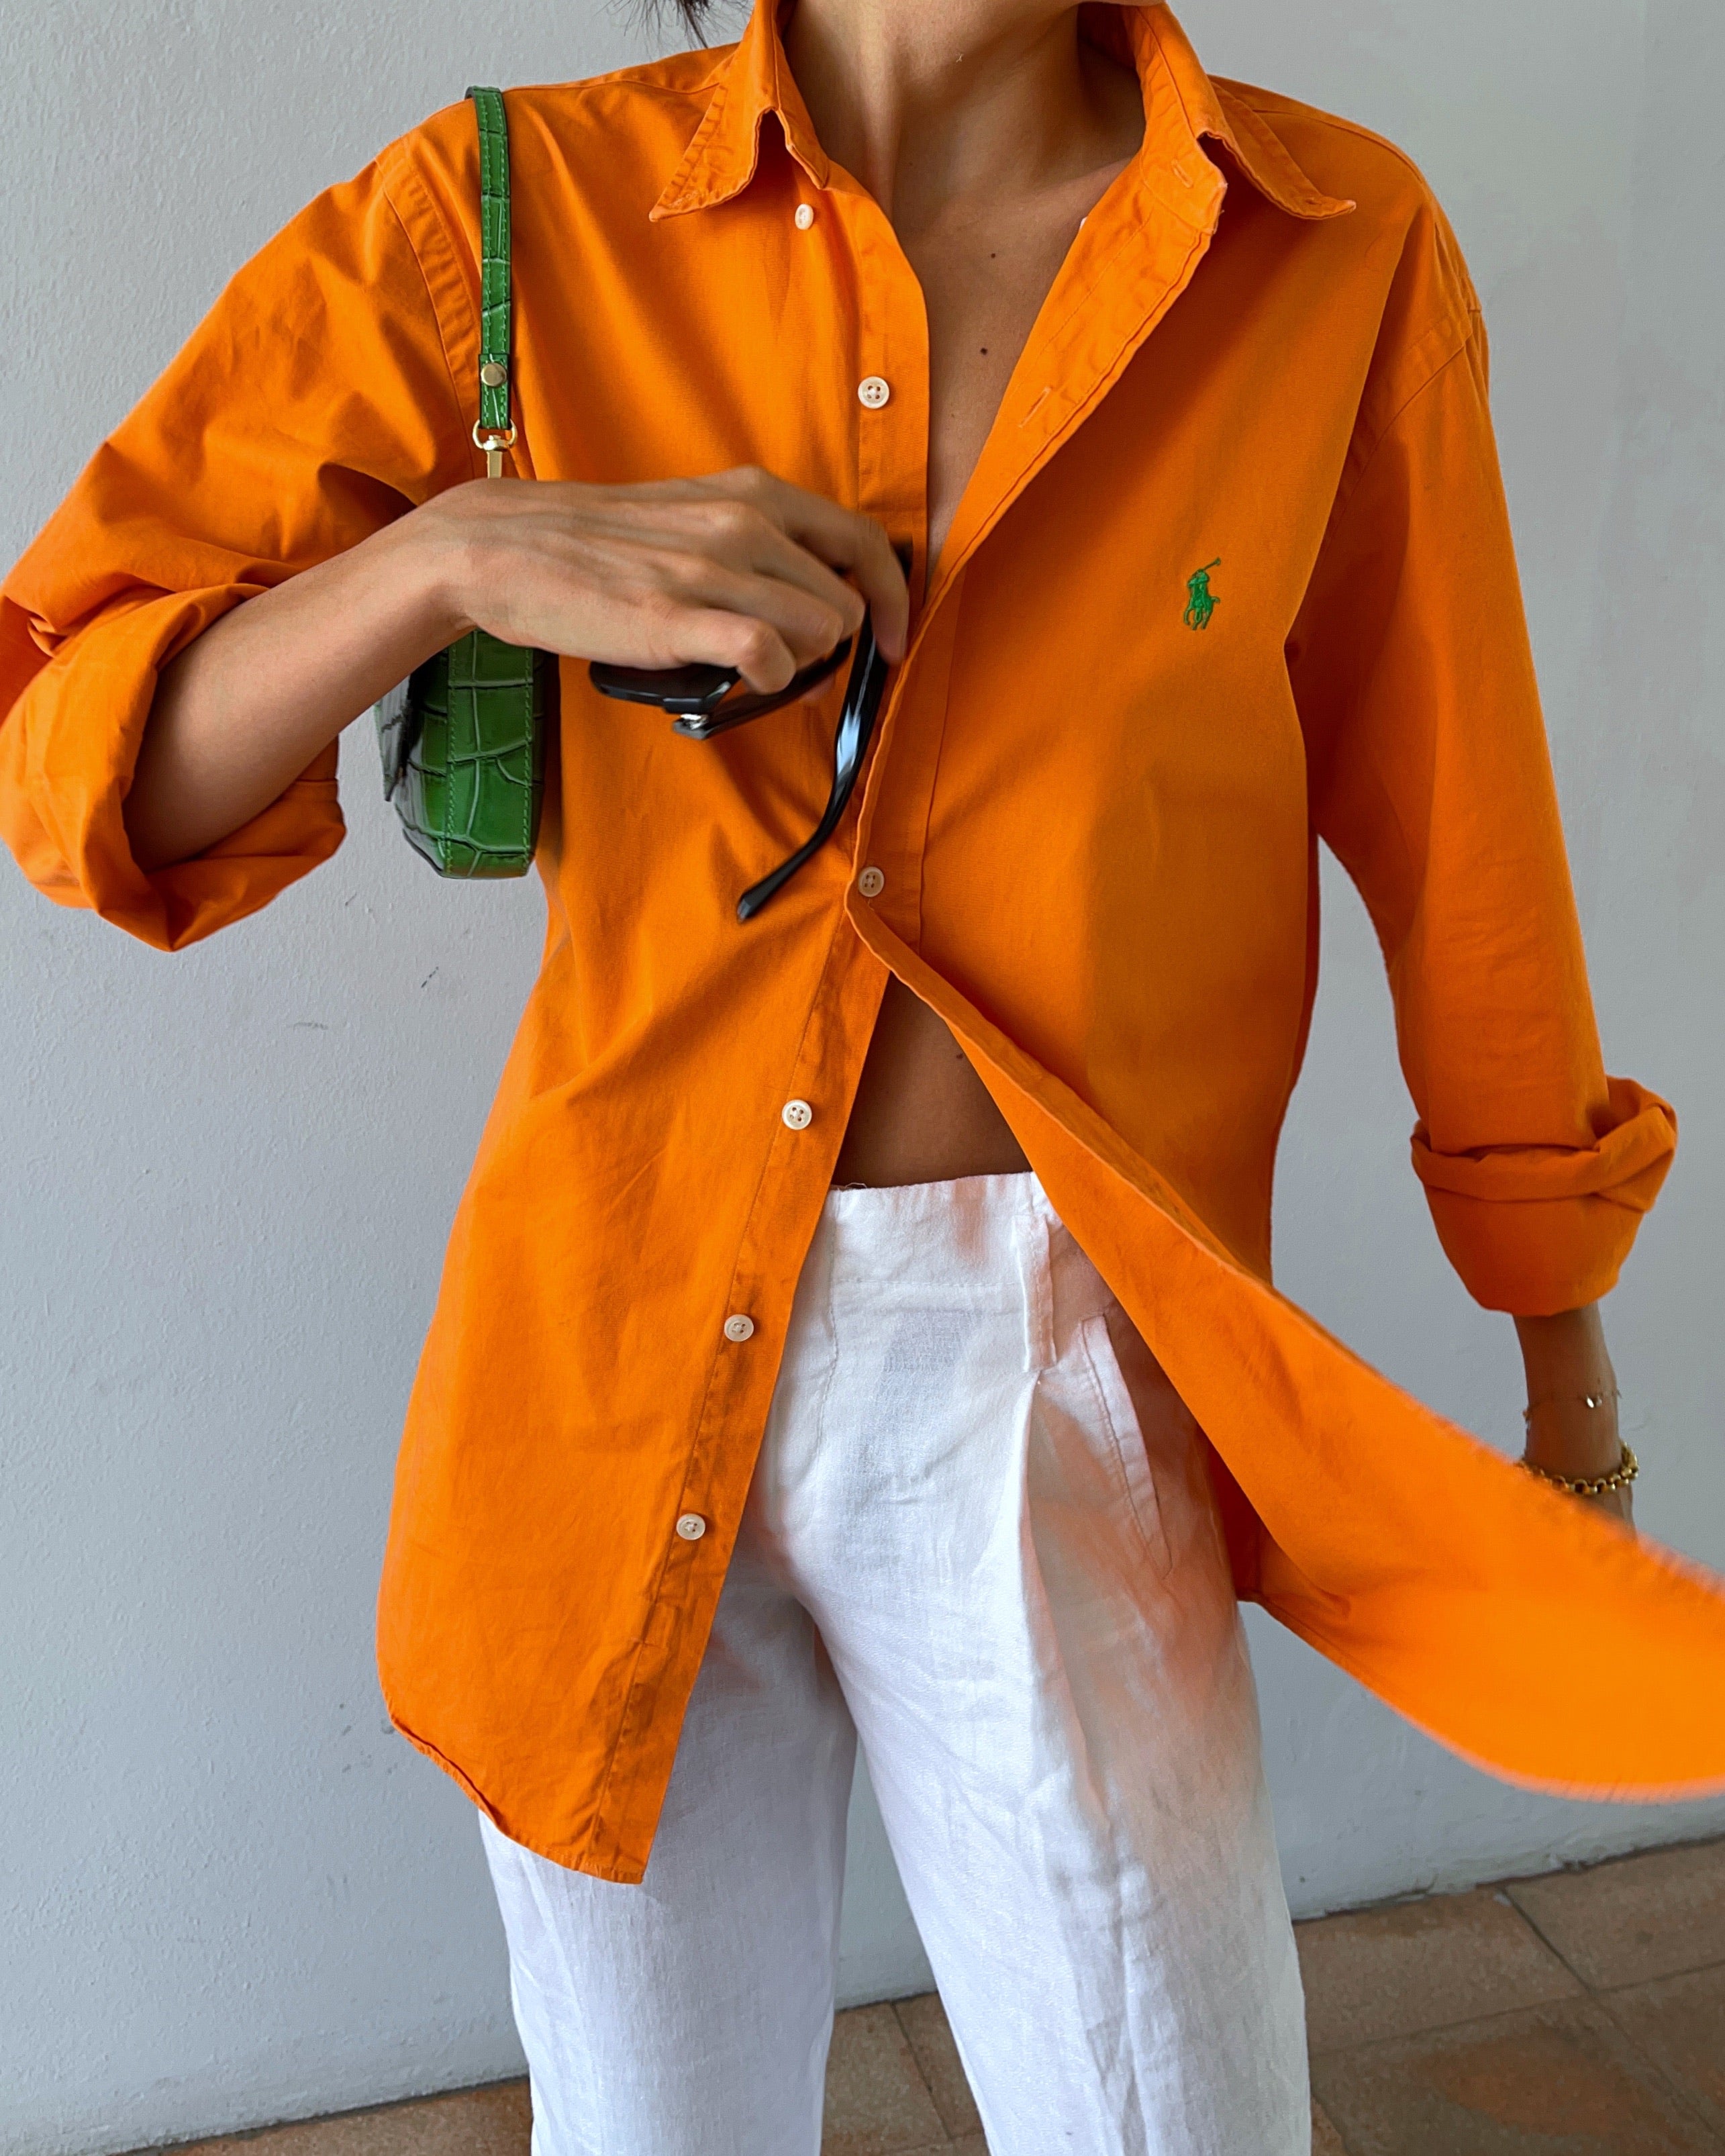 Ralph Lauren orange shirt